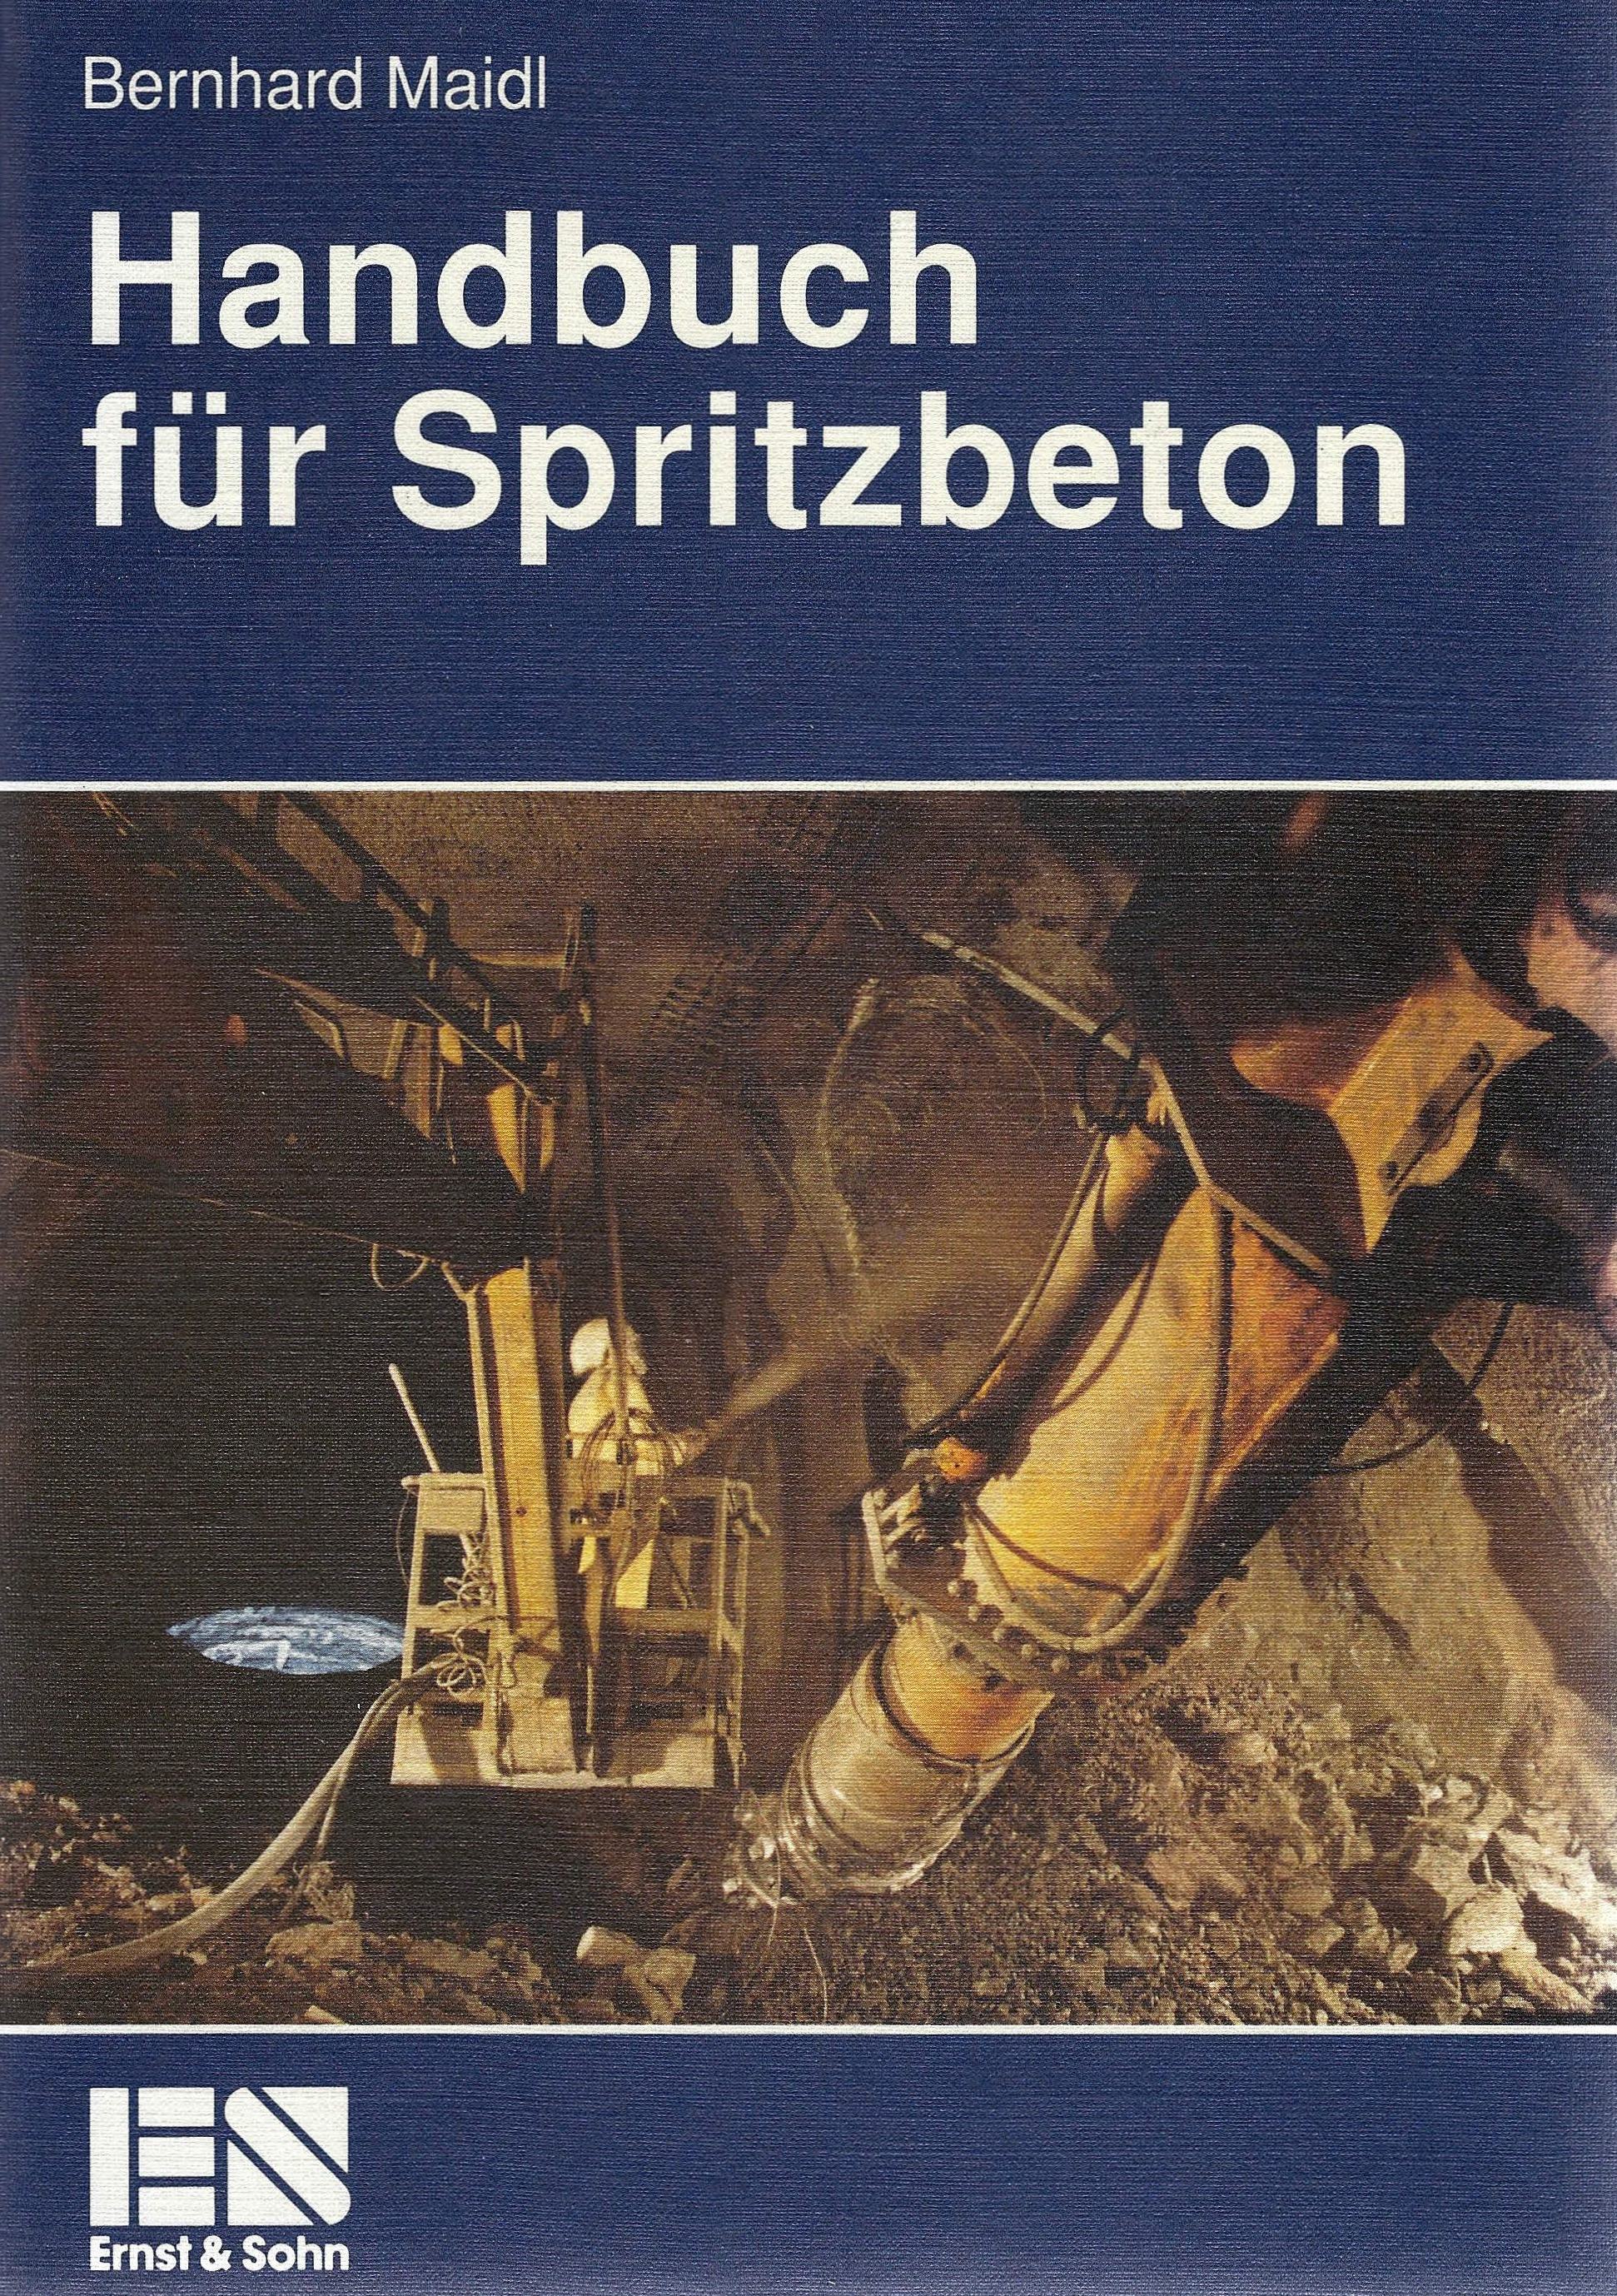 Handbuch fuer Spritzbeton